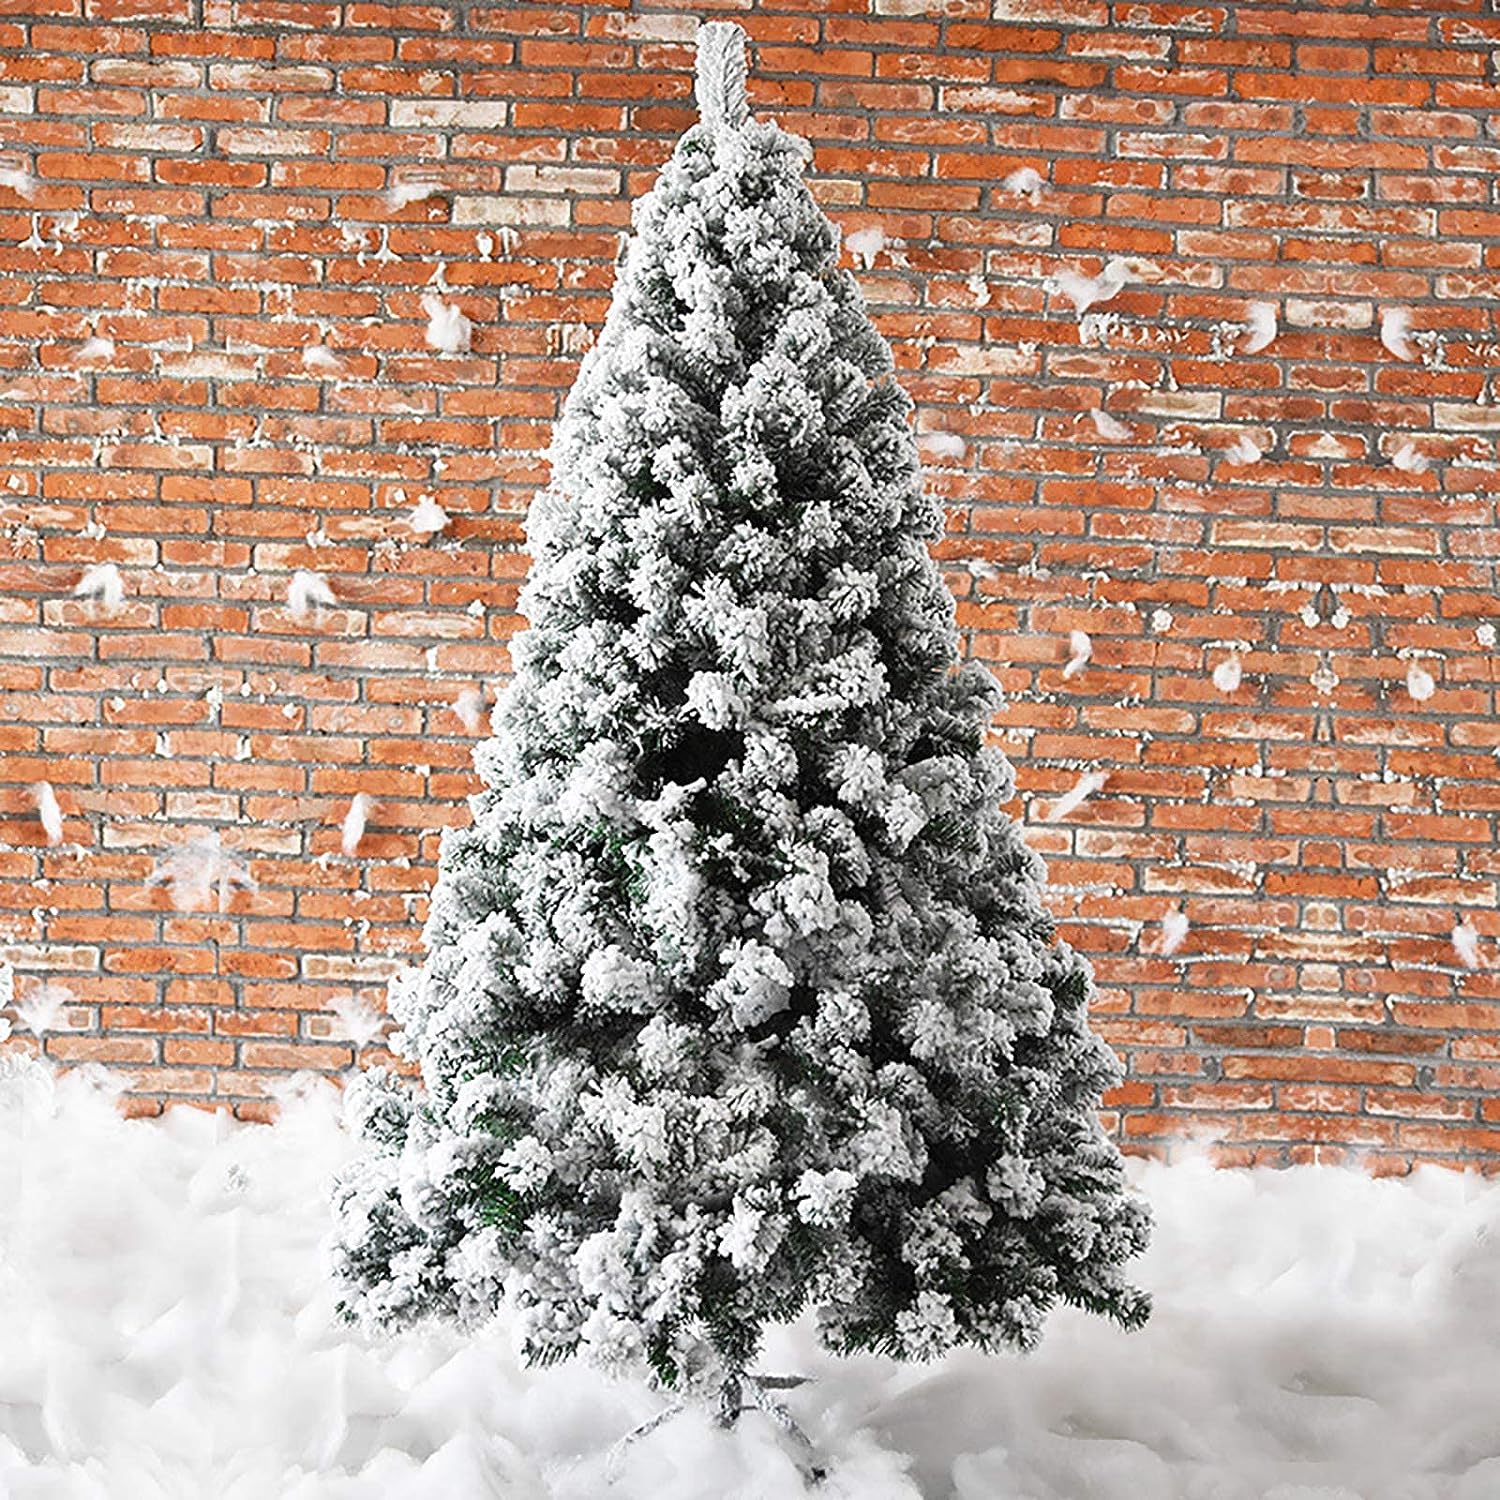 Árbol de Navidad nevado "Roskilde" fabricado en PVC + flocado de muy alta calidad